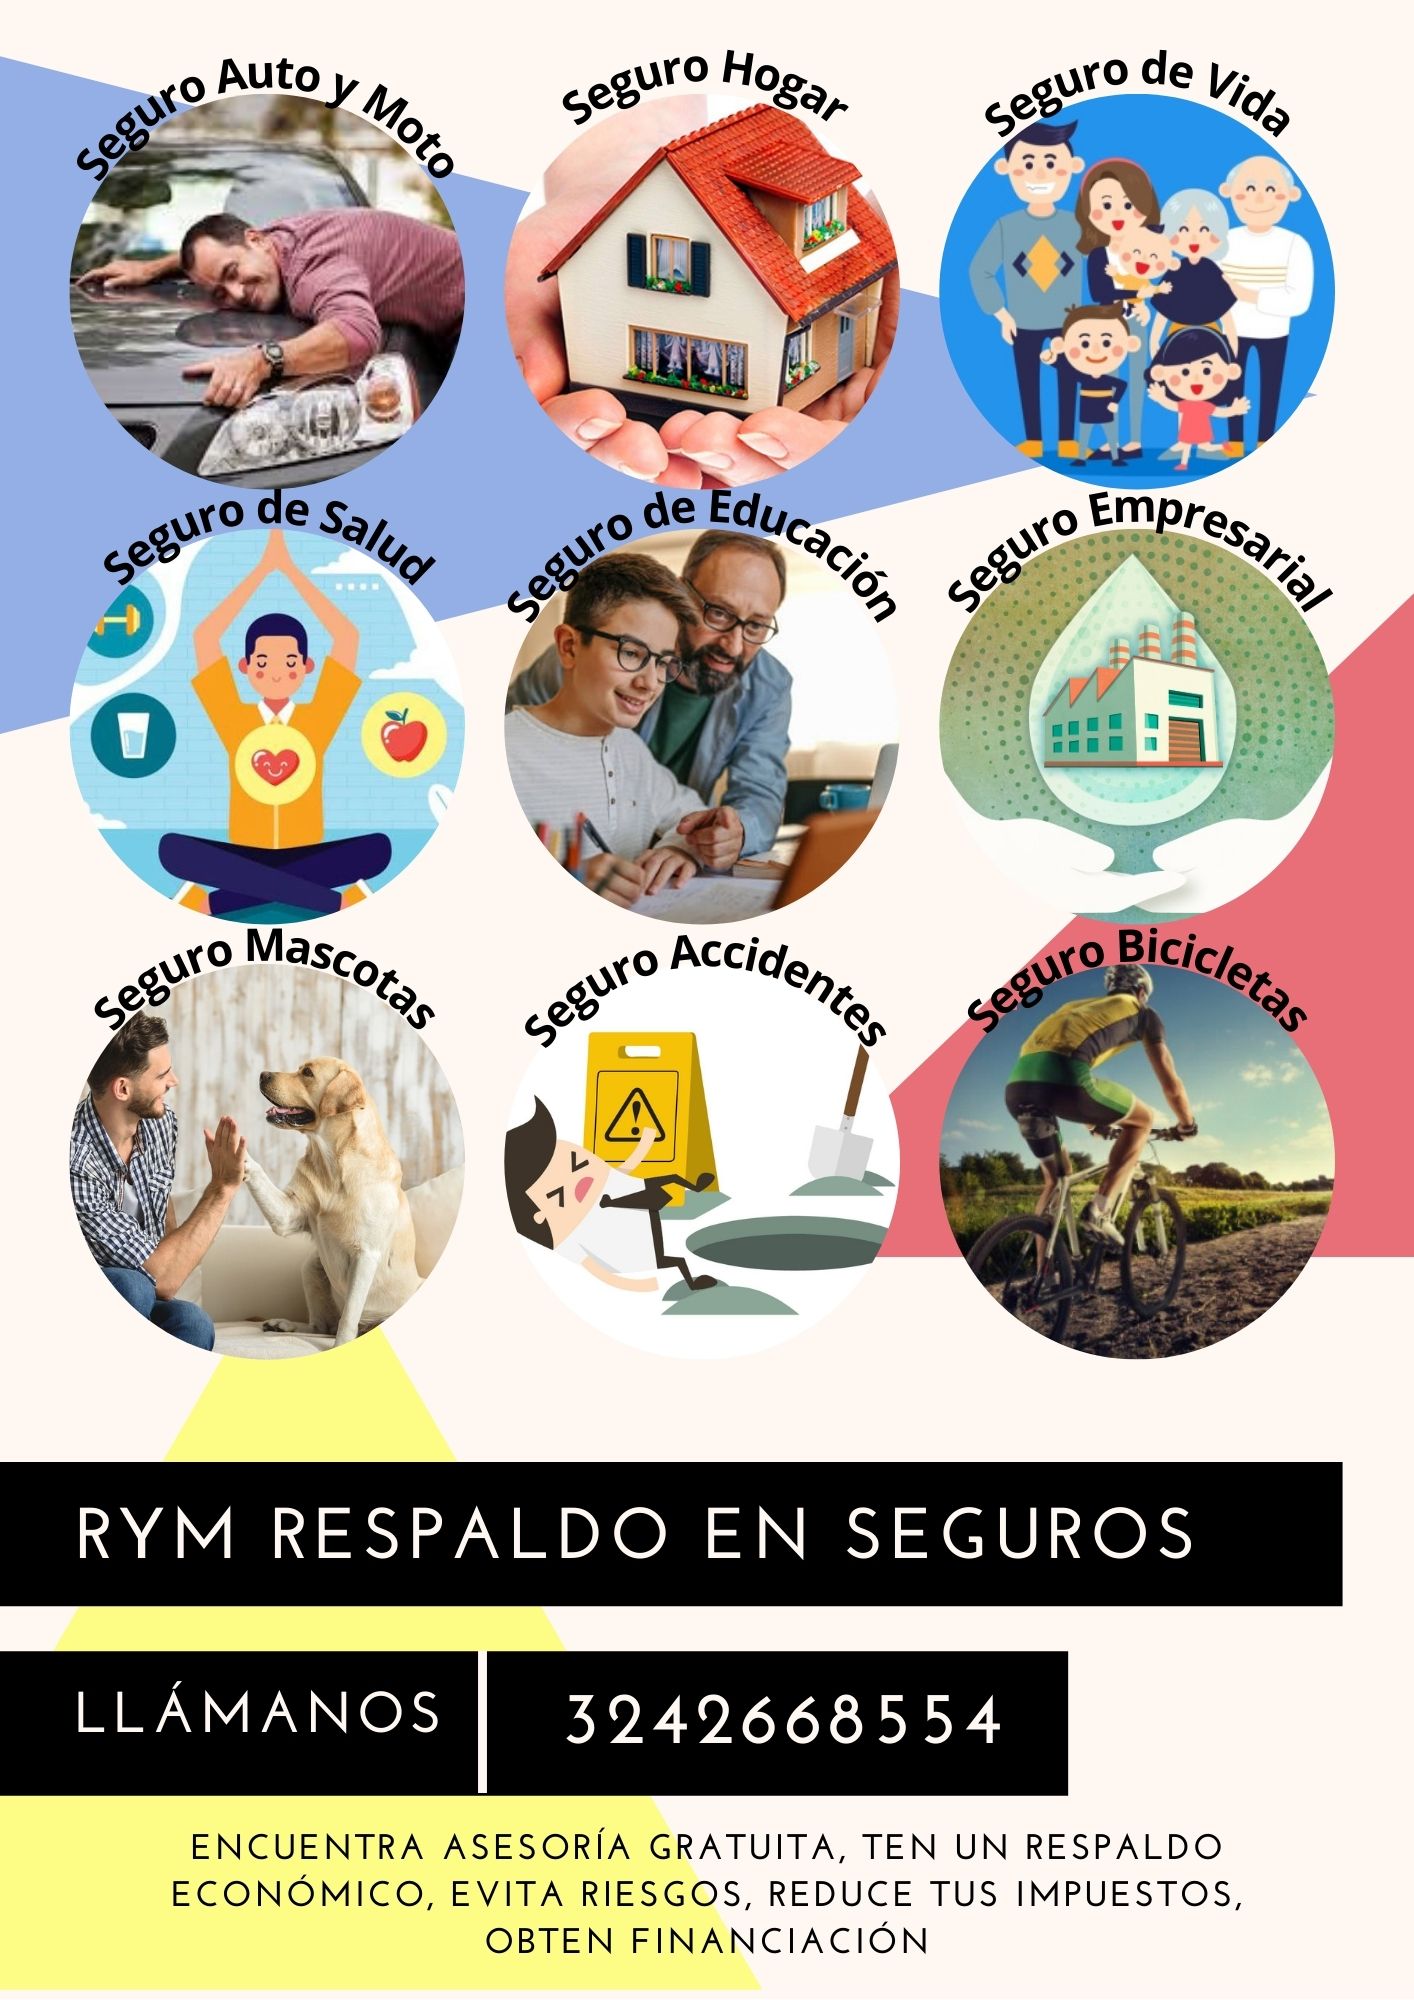 Tipos de seguros RyM Respaldo en Seguros